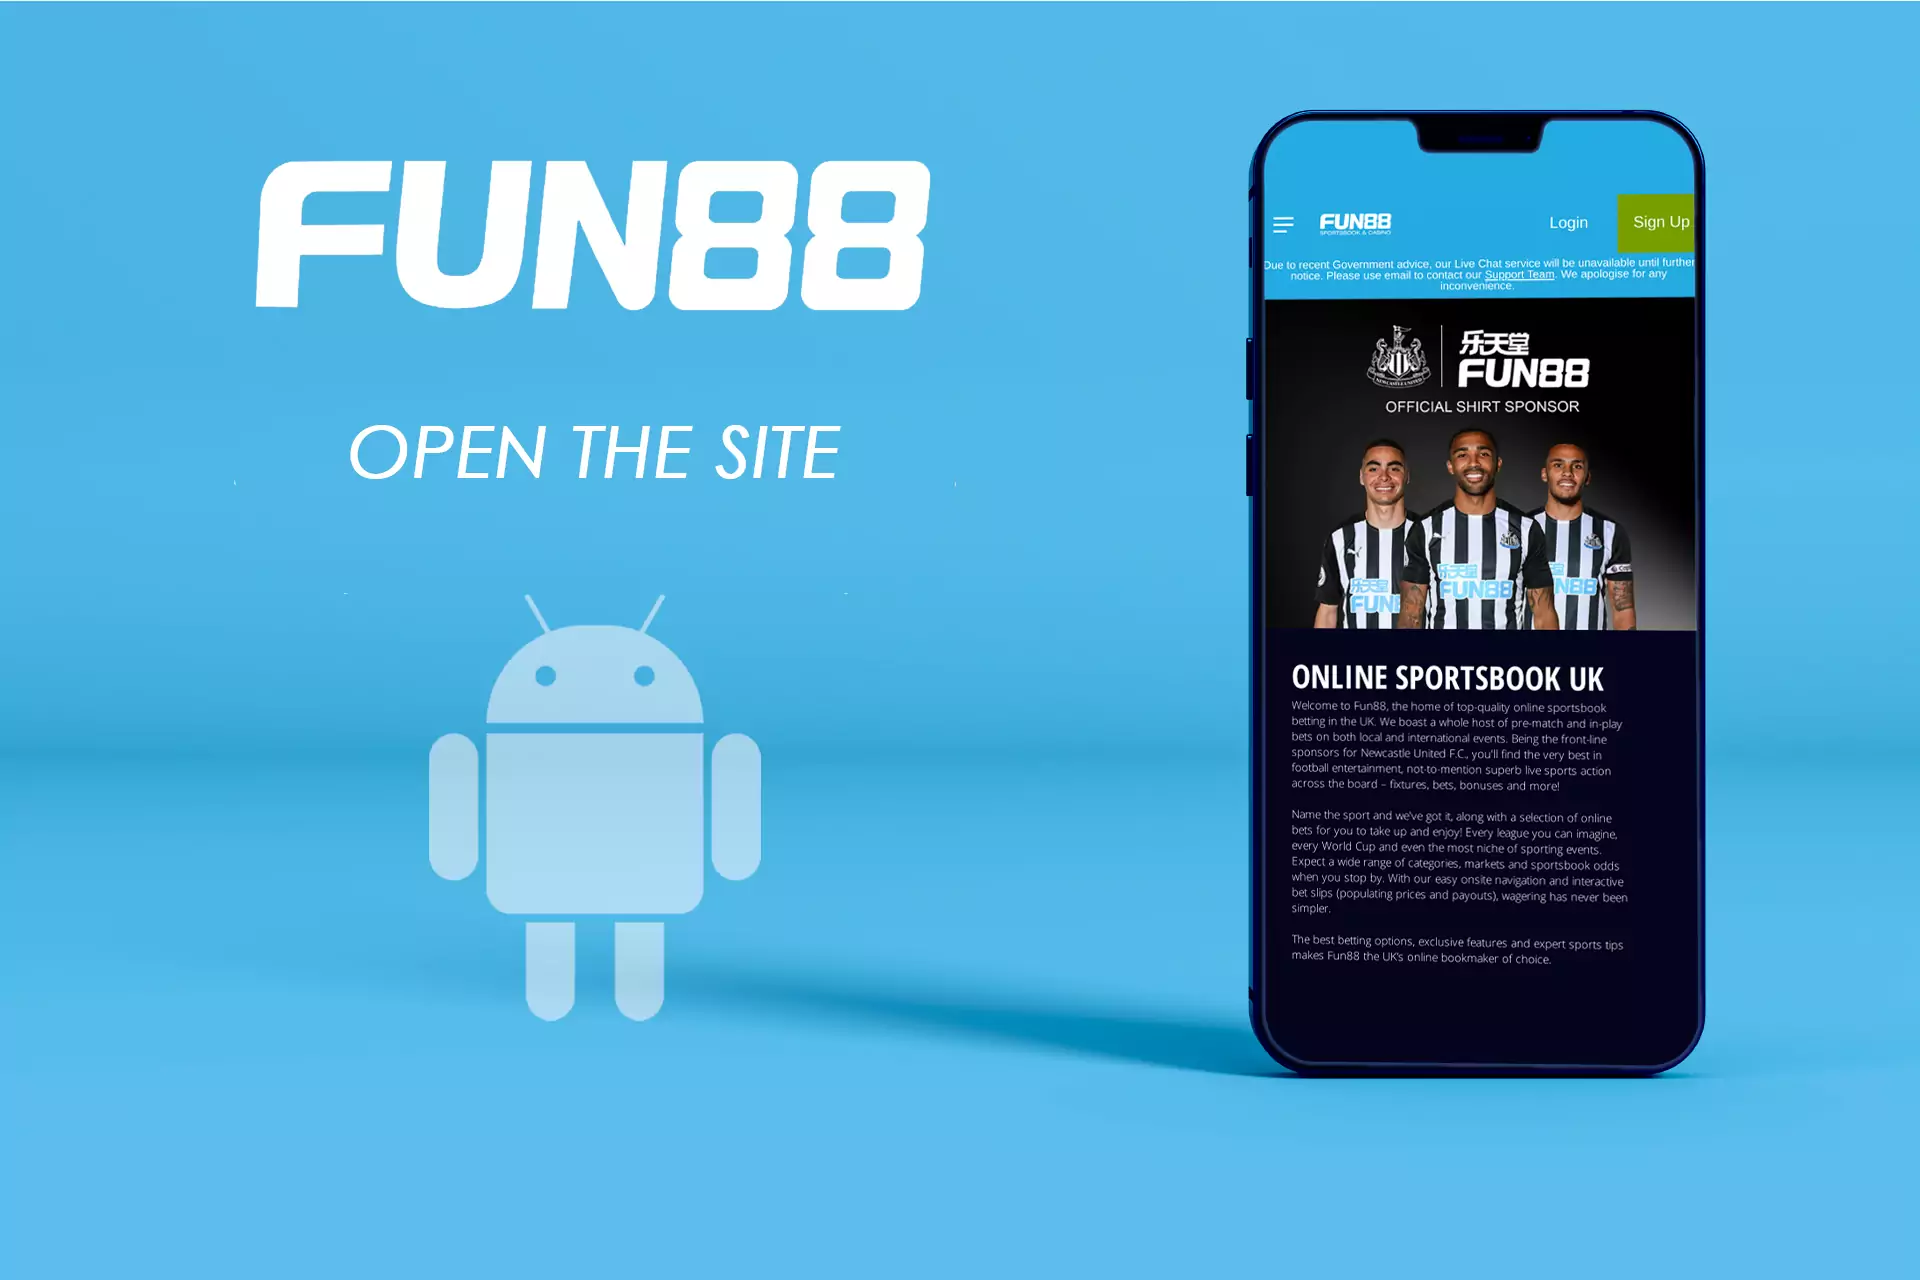 Fun88 की वेबसाइट खोलें और डाउनलोड करने के लिए लिंक के साथ पेज ढूंढें।